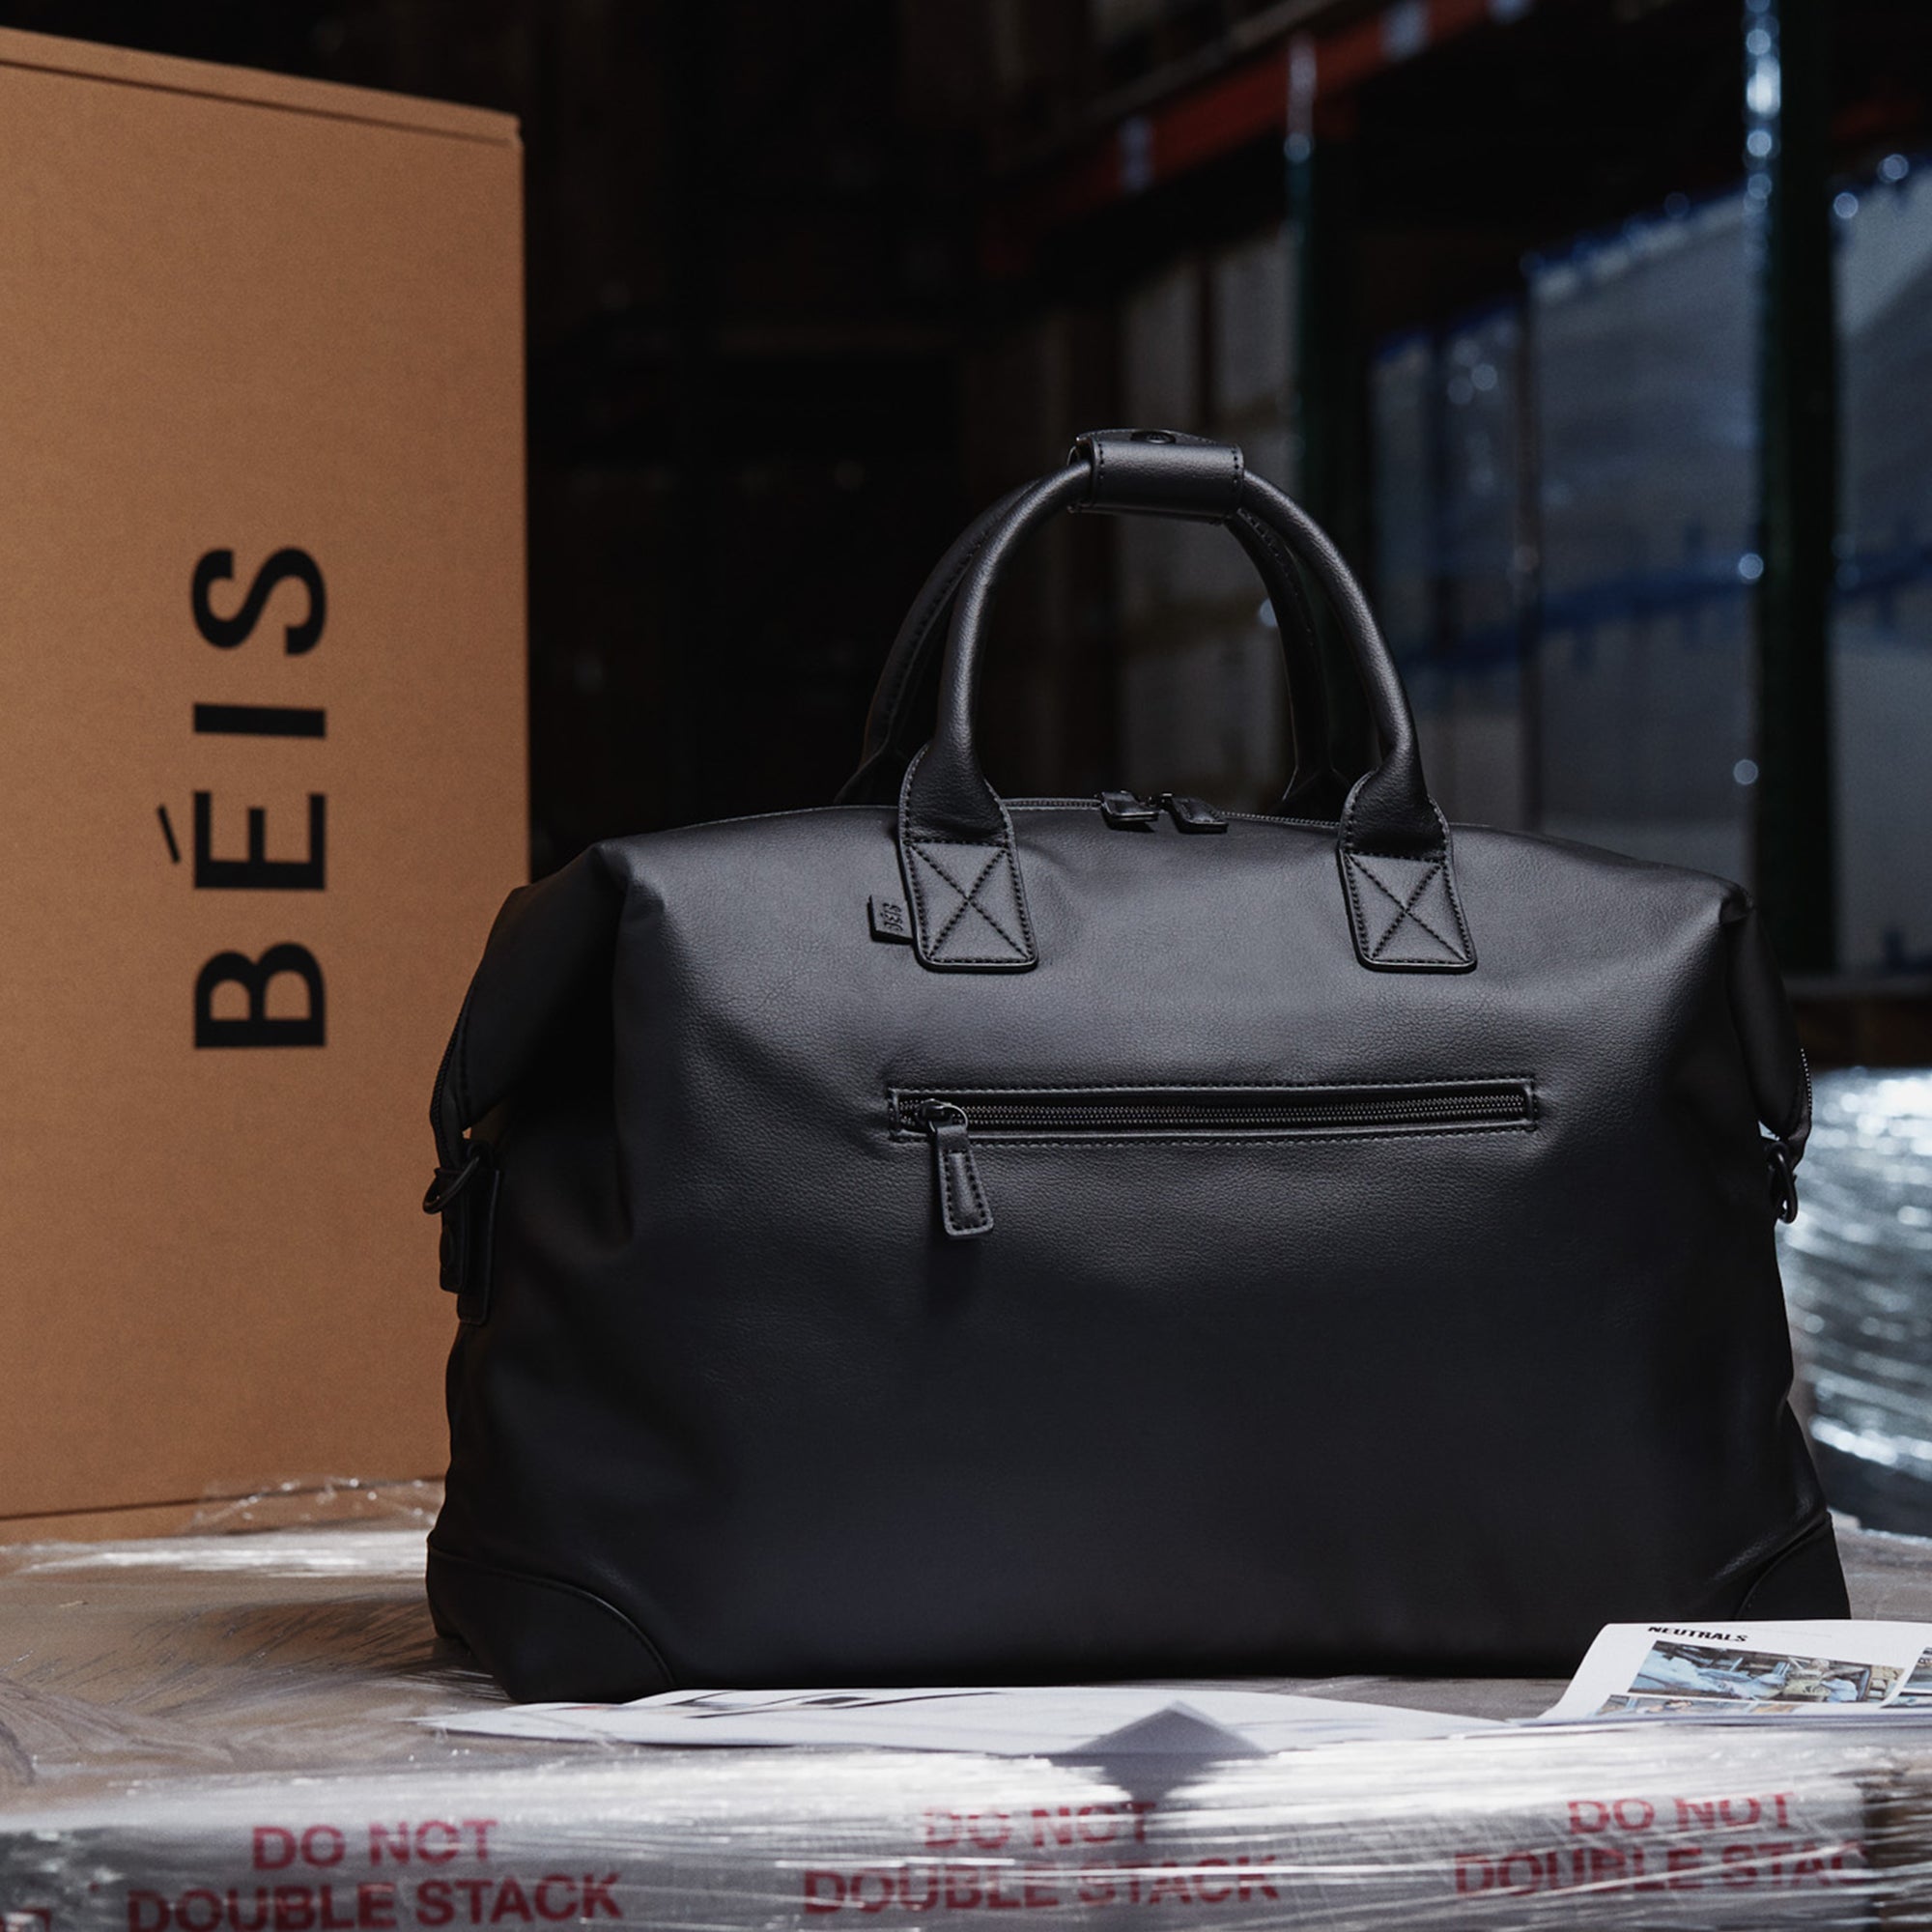 Béis 'The Premium Duffle' in Black - Black Vegan Leather Duffle Bag ...